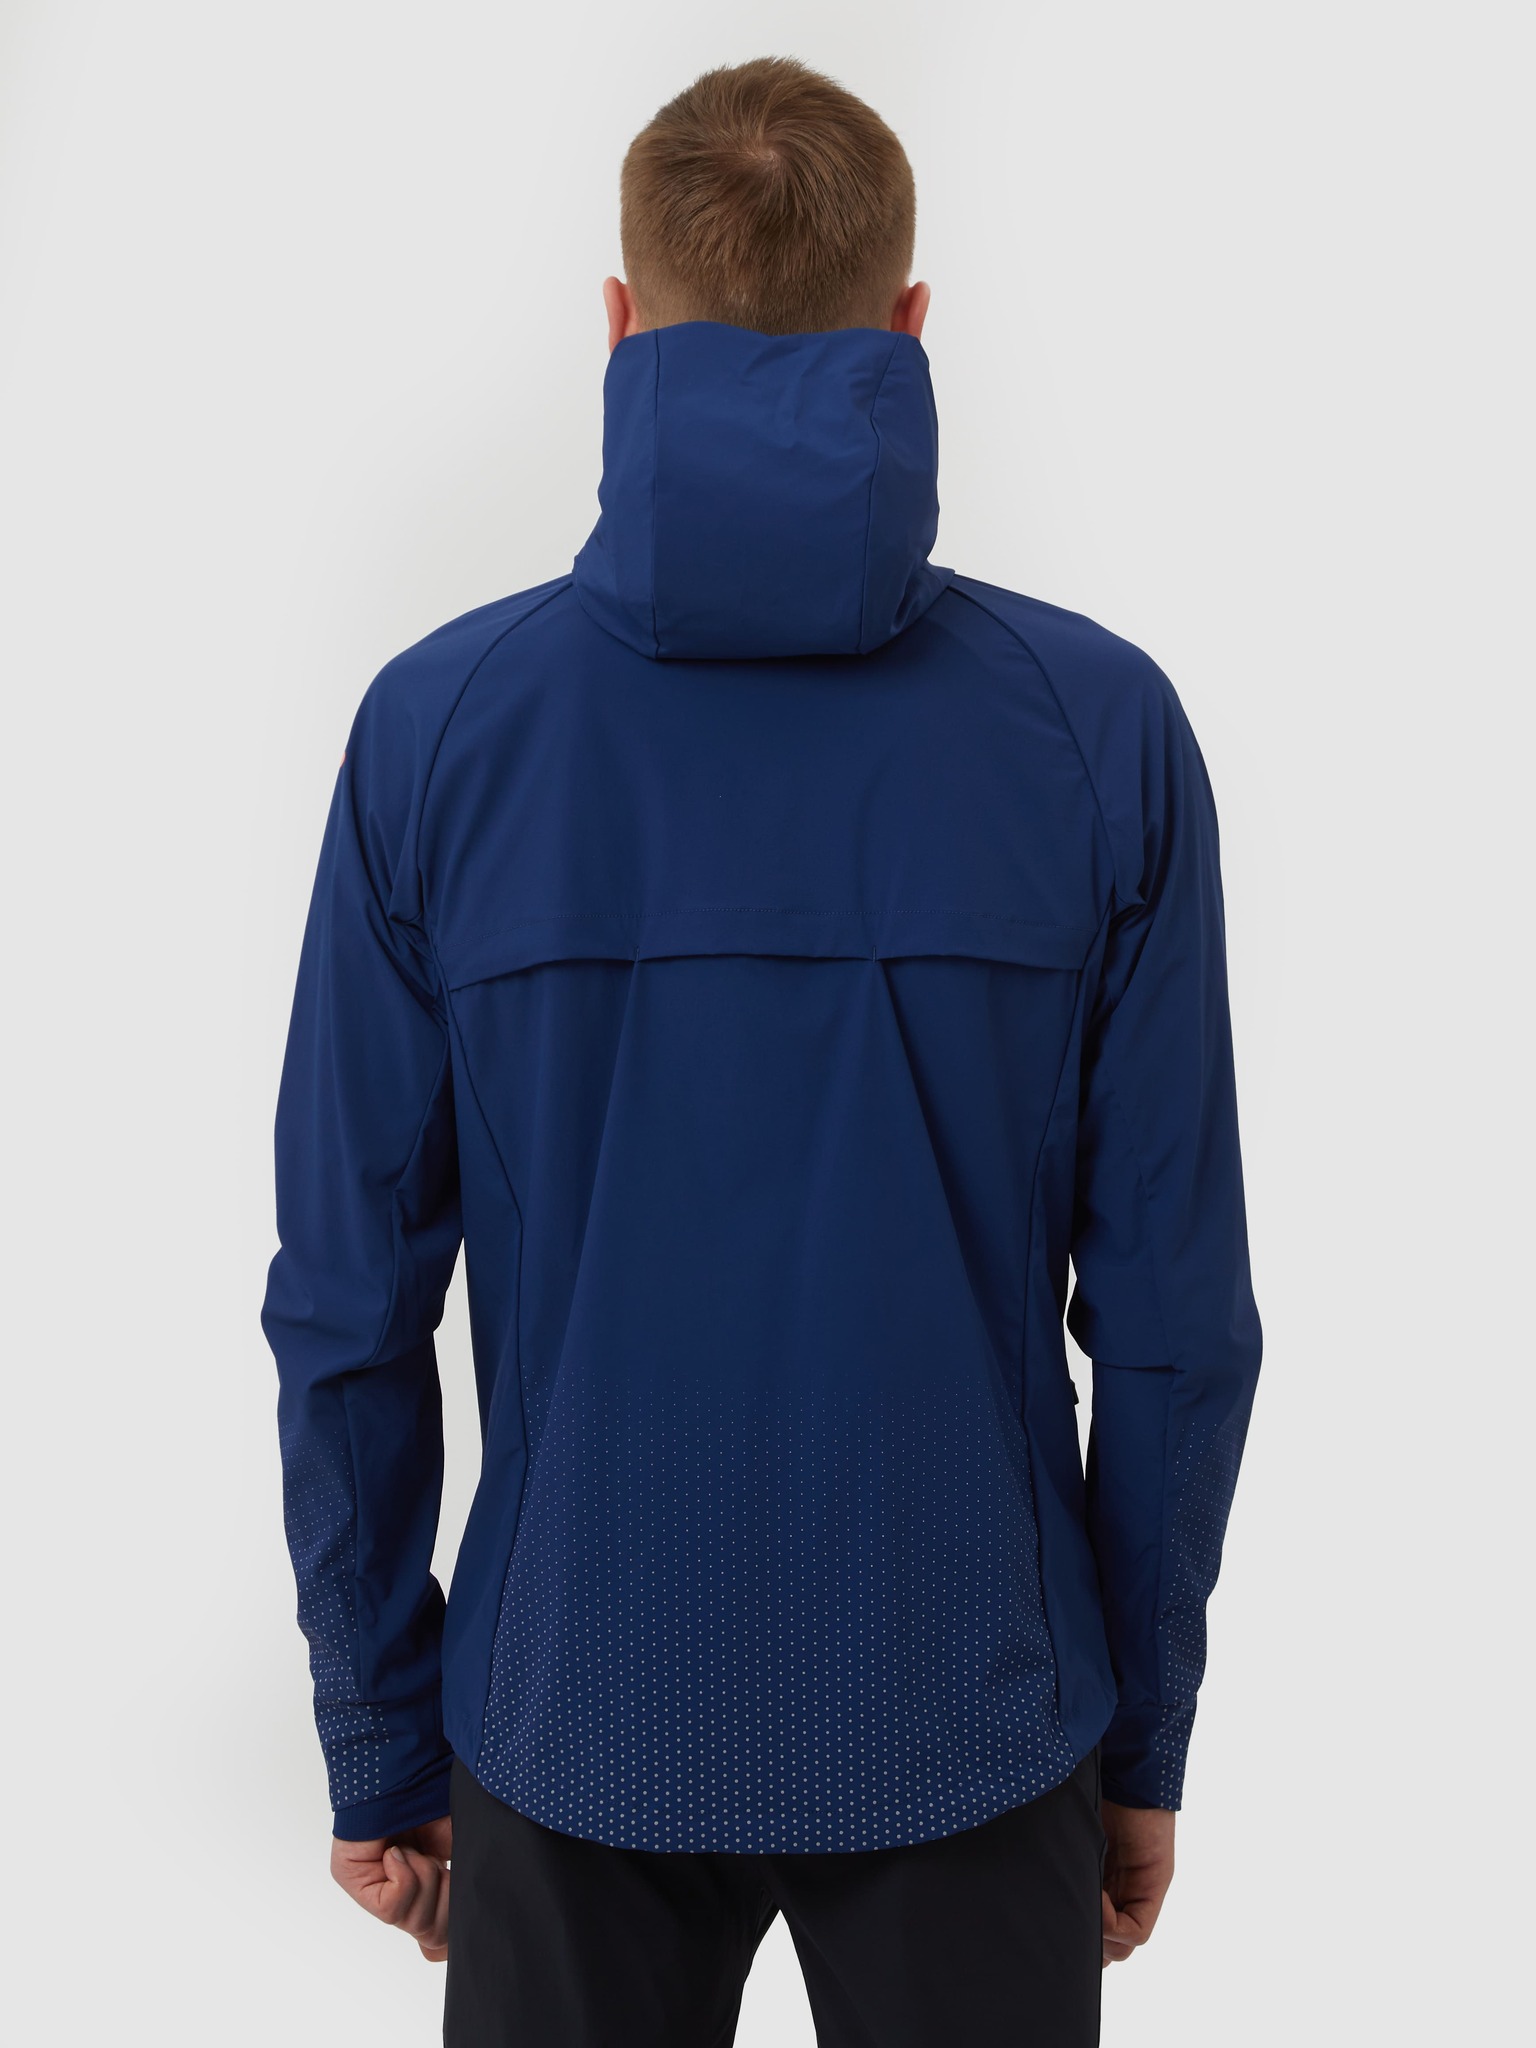 Куртка Gri Джеди 5.0 мужской темно-синий. Фото N2